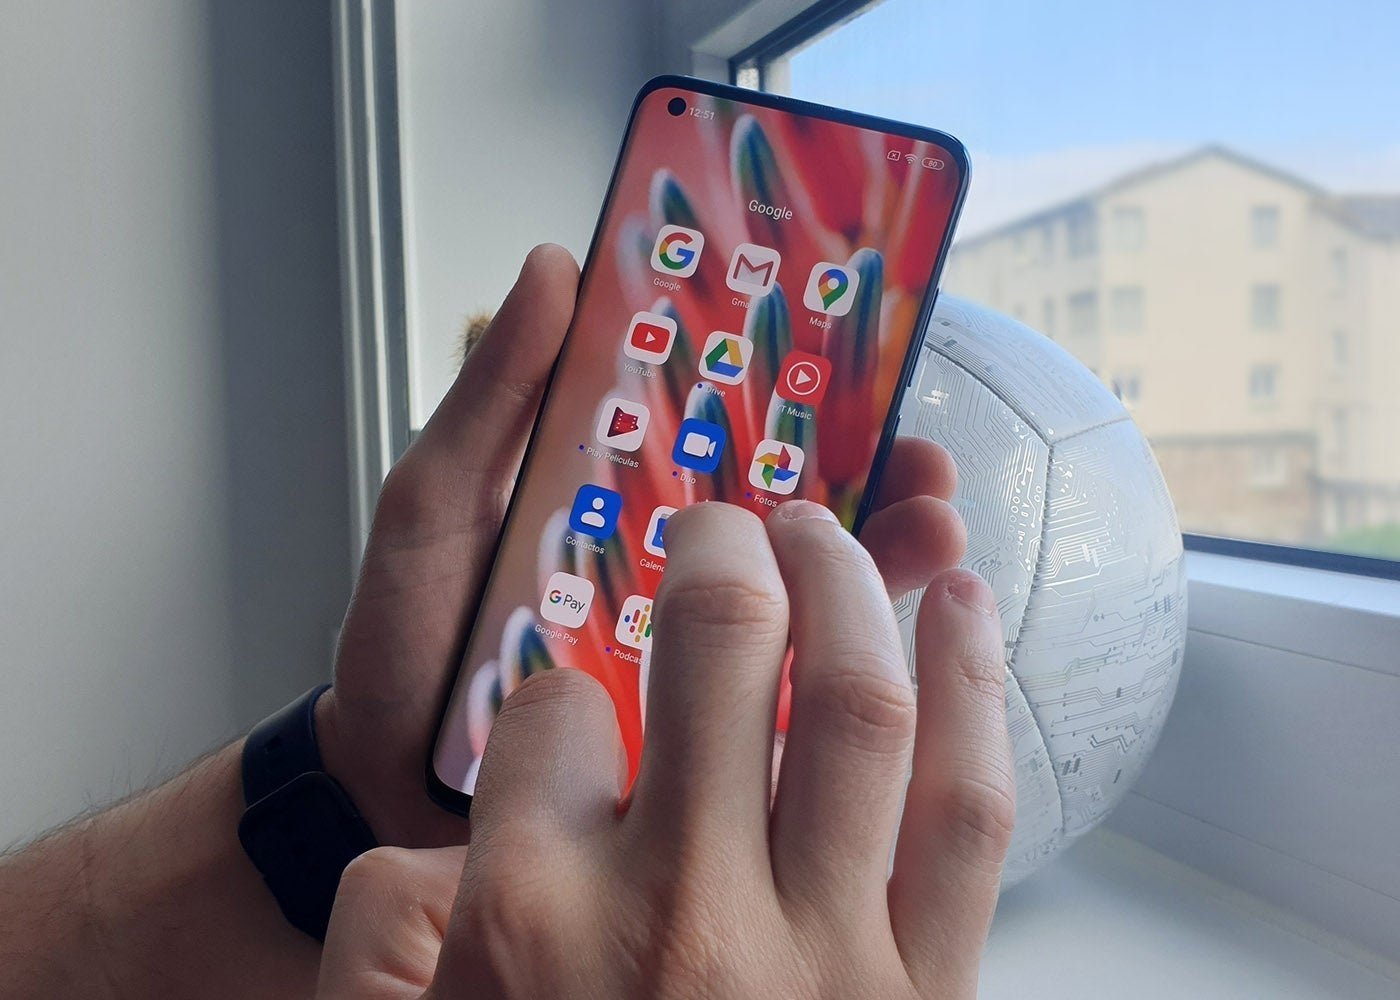 Xiaomi lanza una app para que controles tu móvil desde el ordenador: así se usa